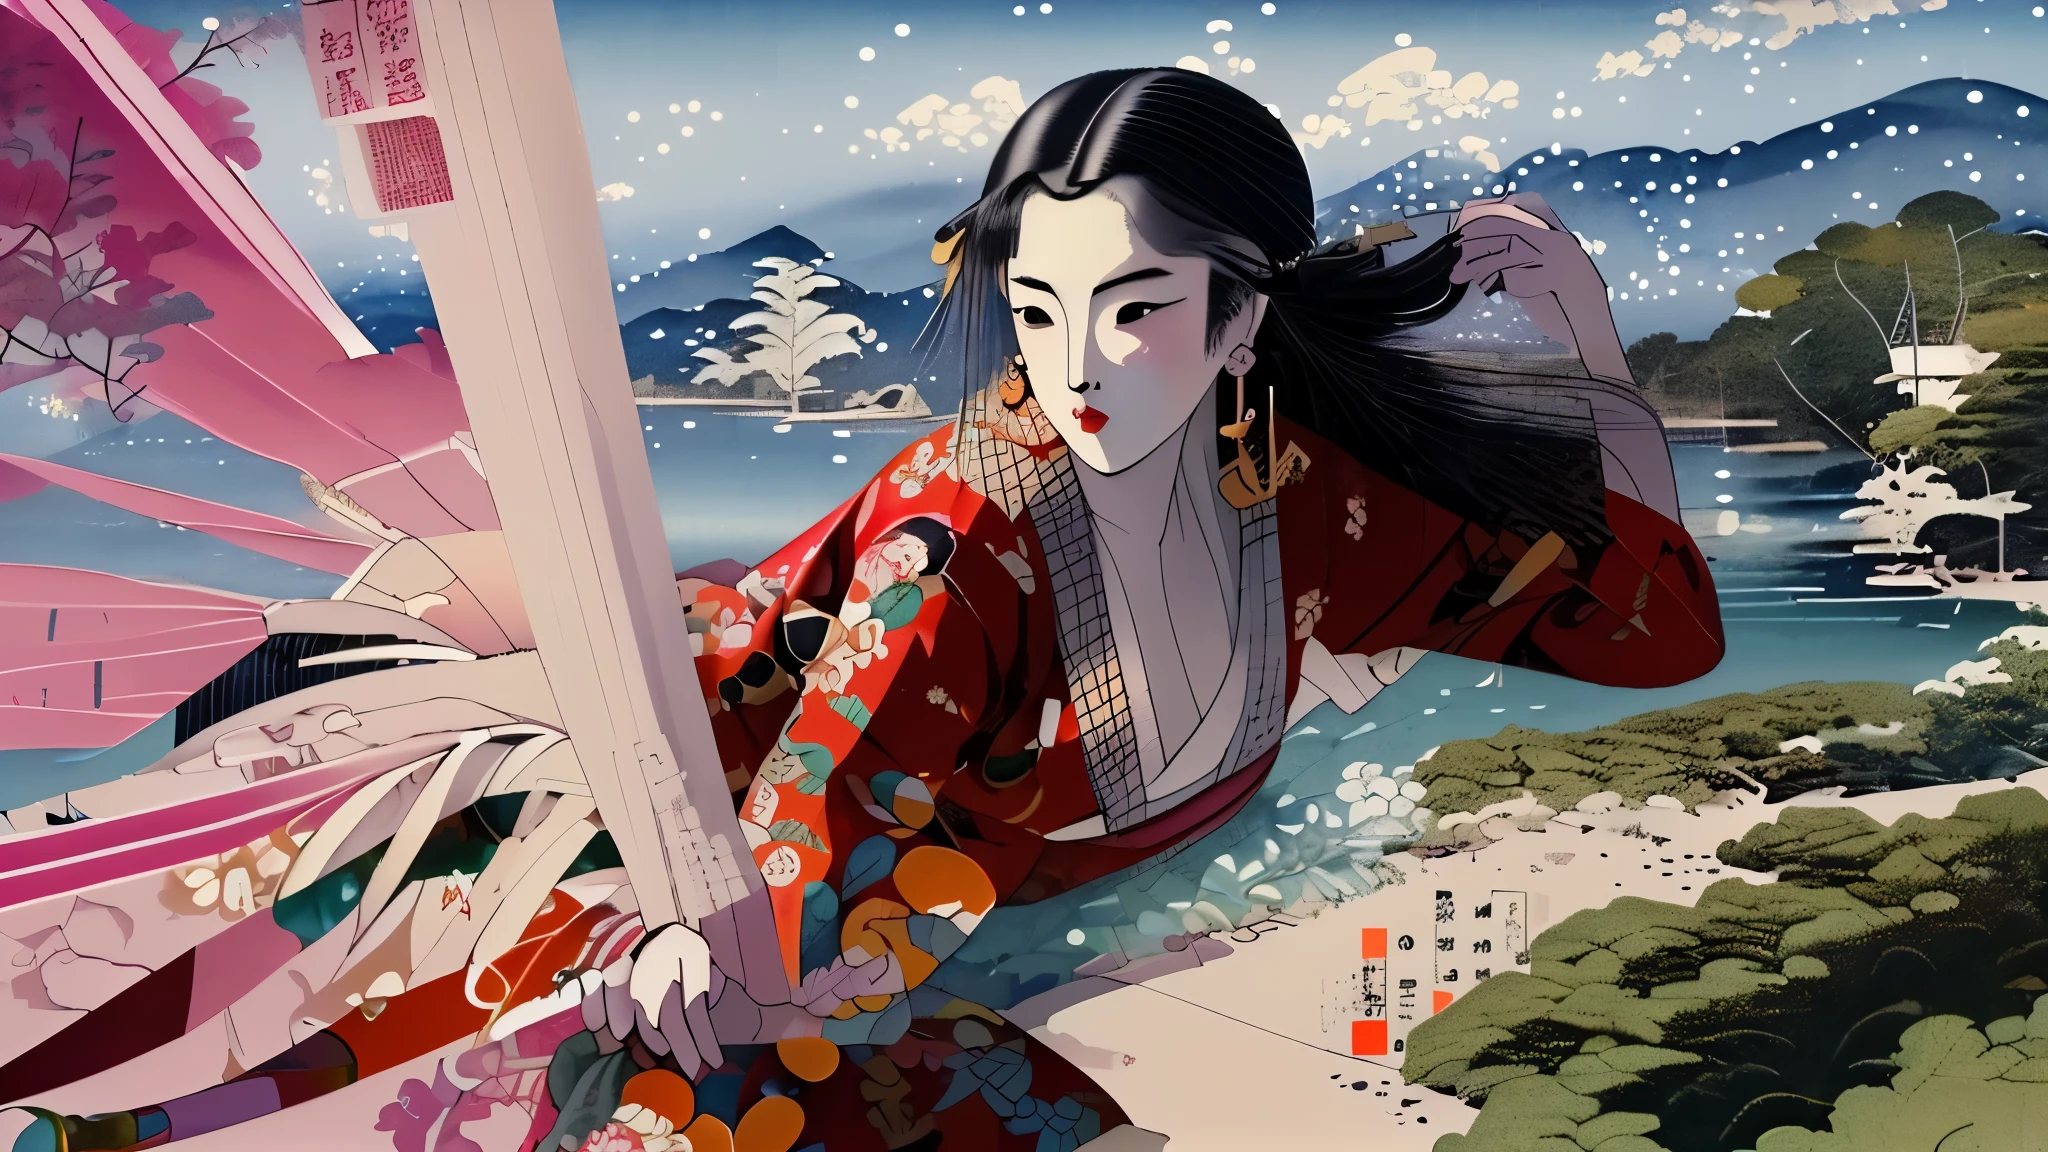 傑作, 最高品質, ukiyo-e:1.2, 歌麿風に, 美しい20代の中国人モデル, 超詳細な顔
